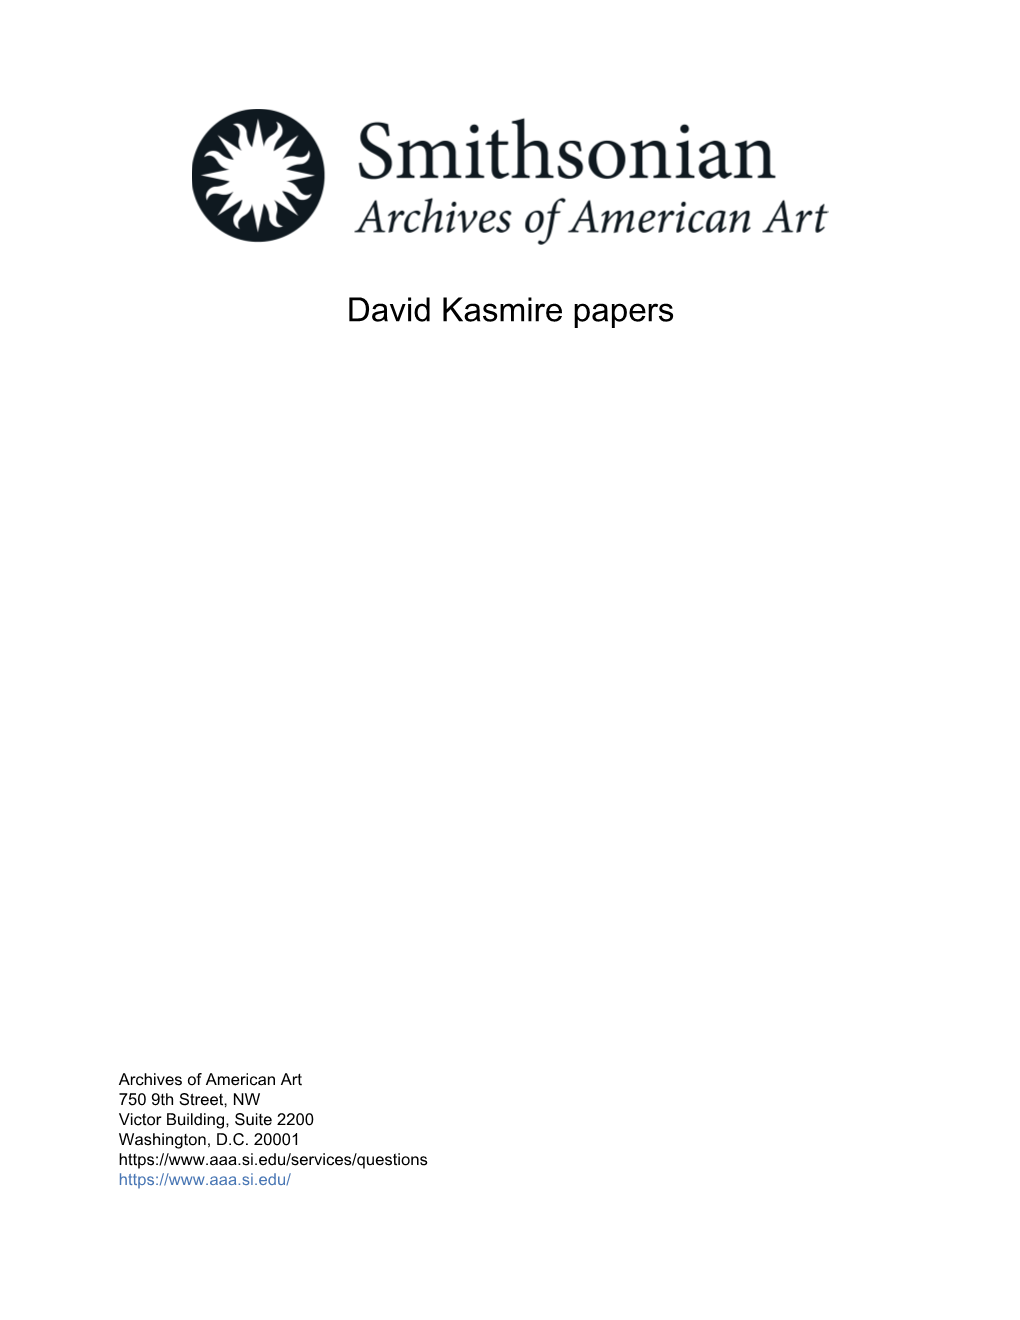 David Kasmire Papers